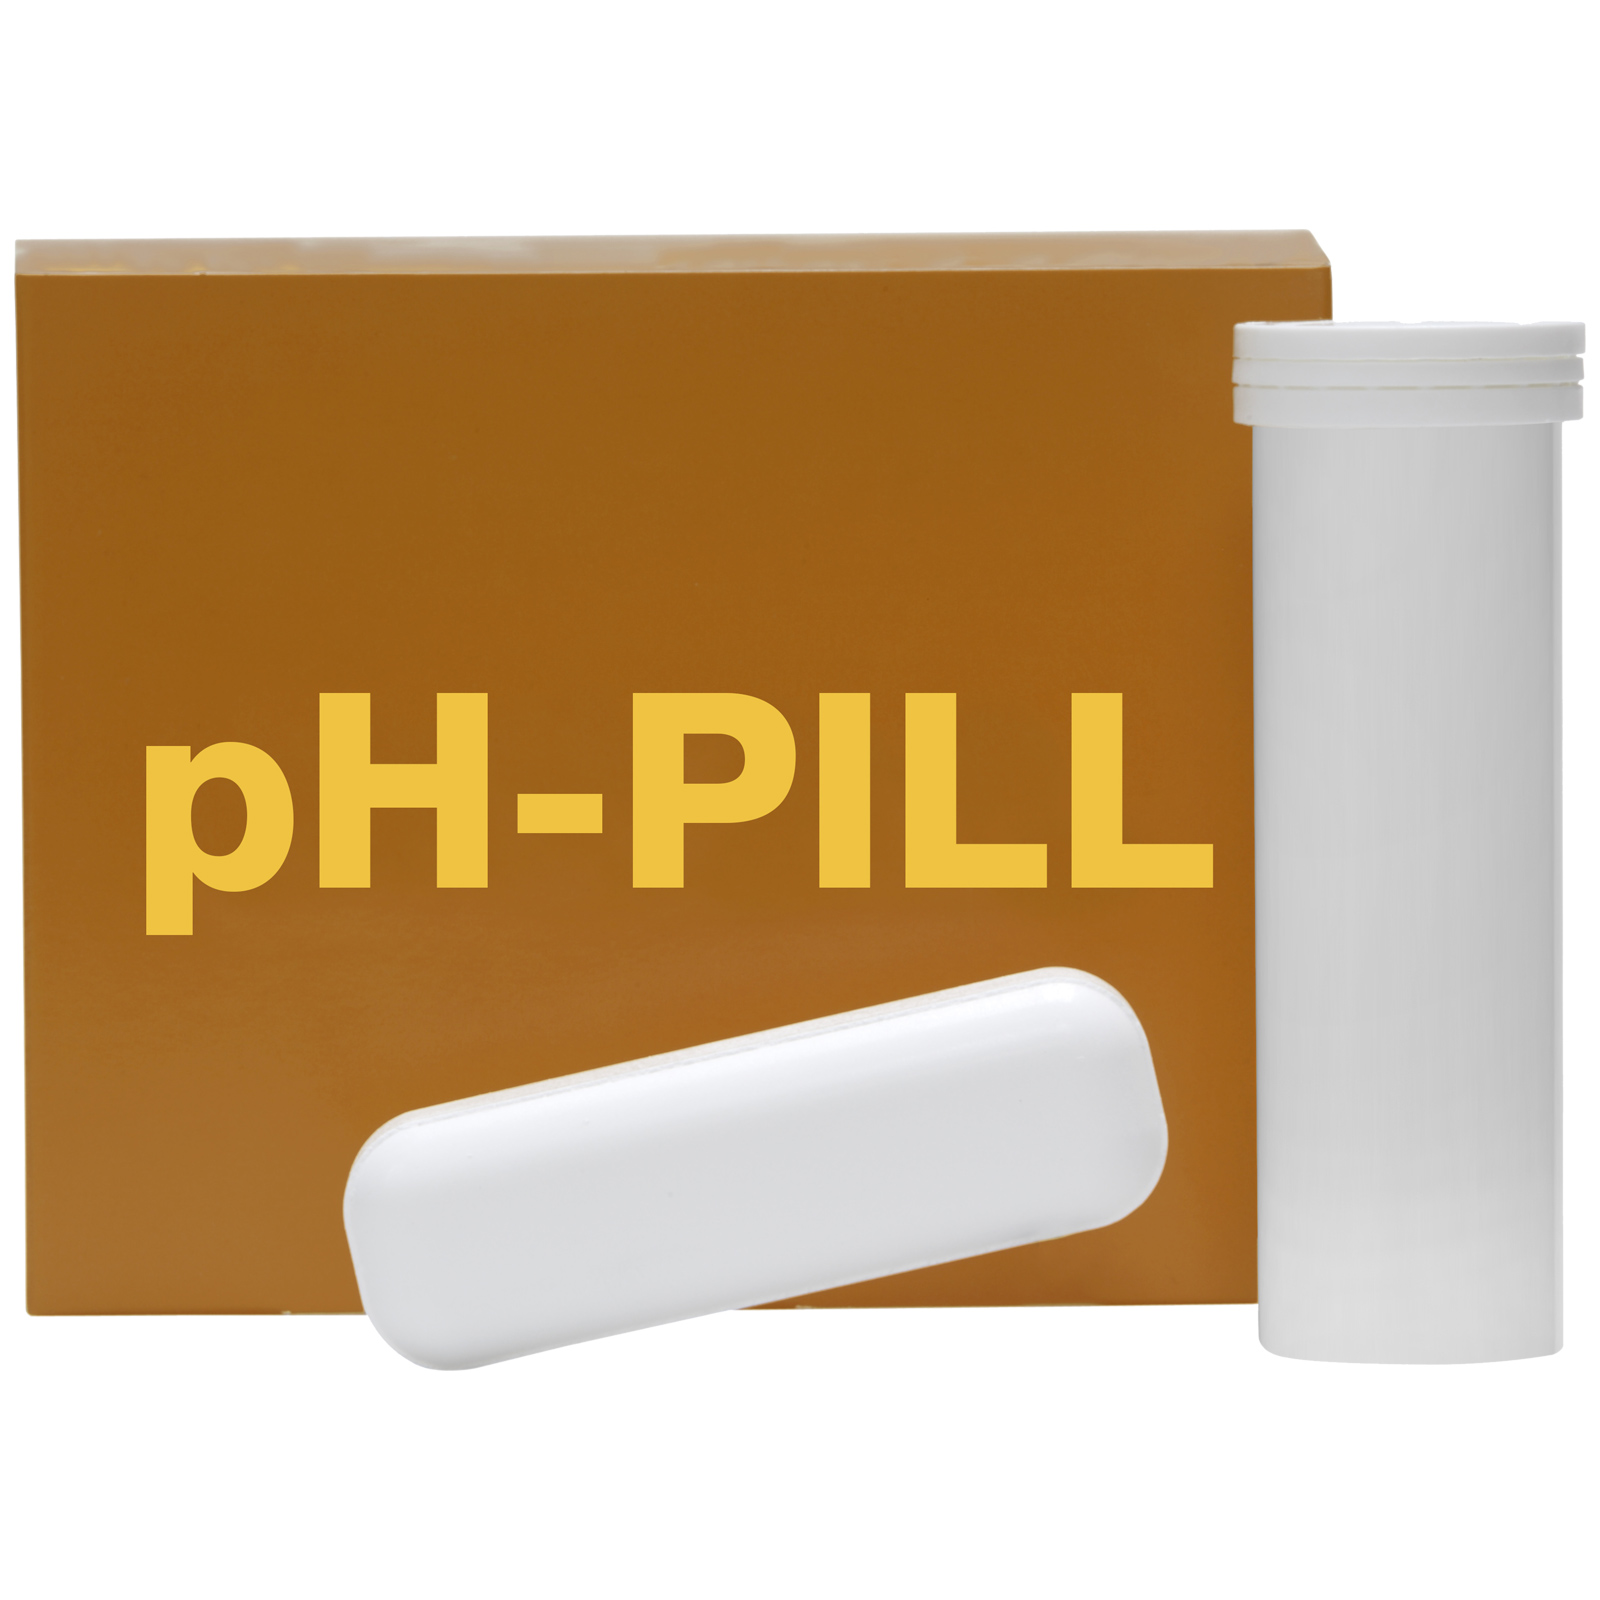 pH-PILL contre l'acidification de la panse 4 x 120 gr